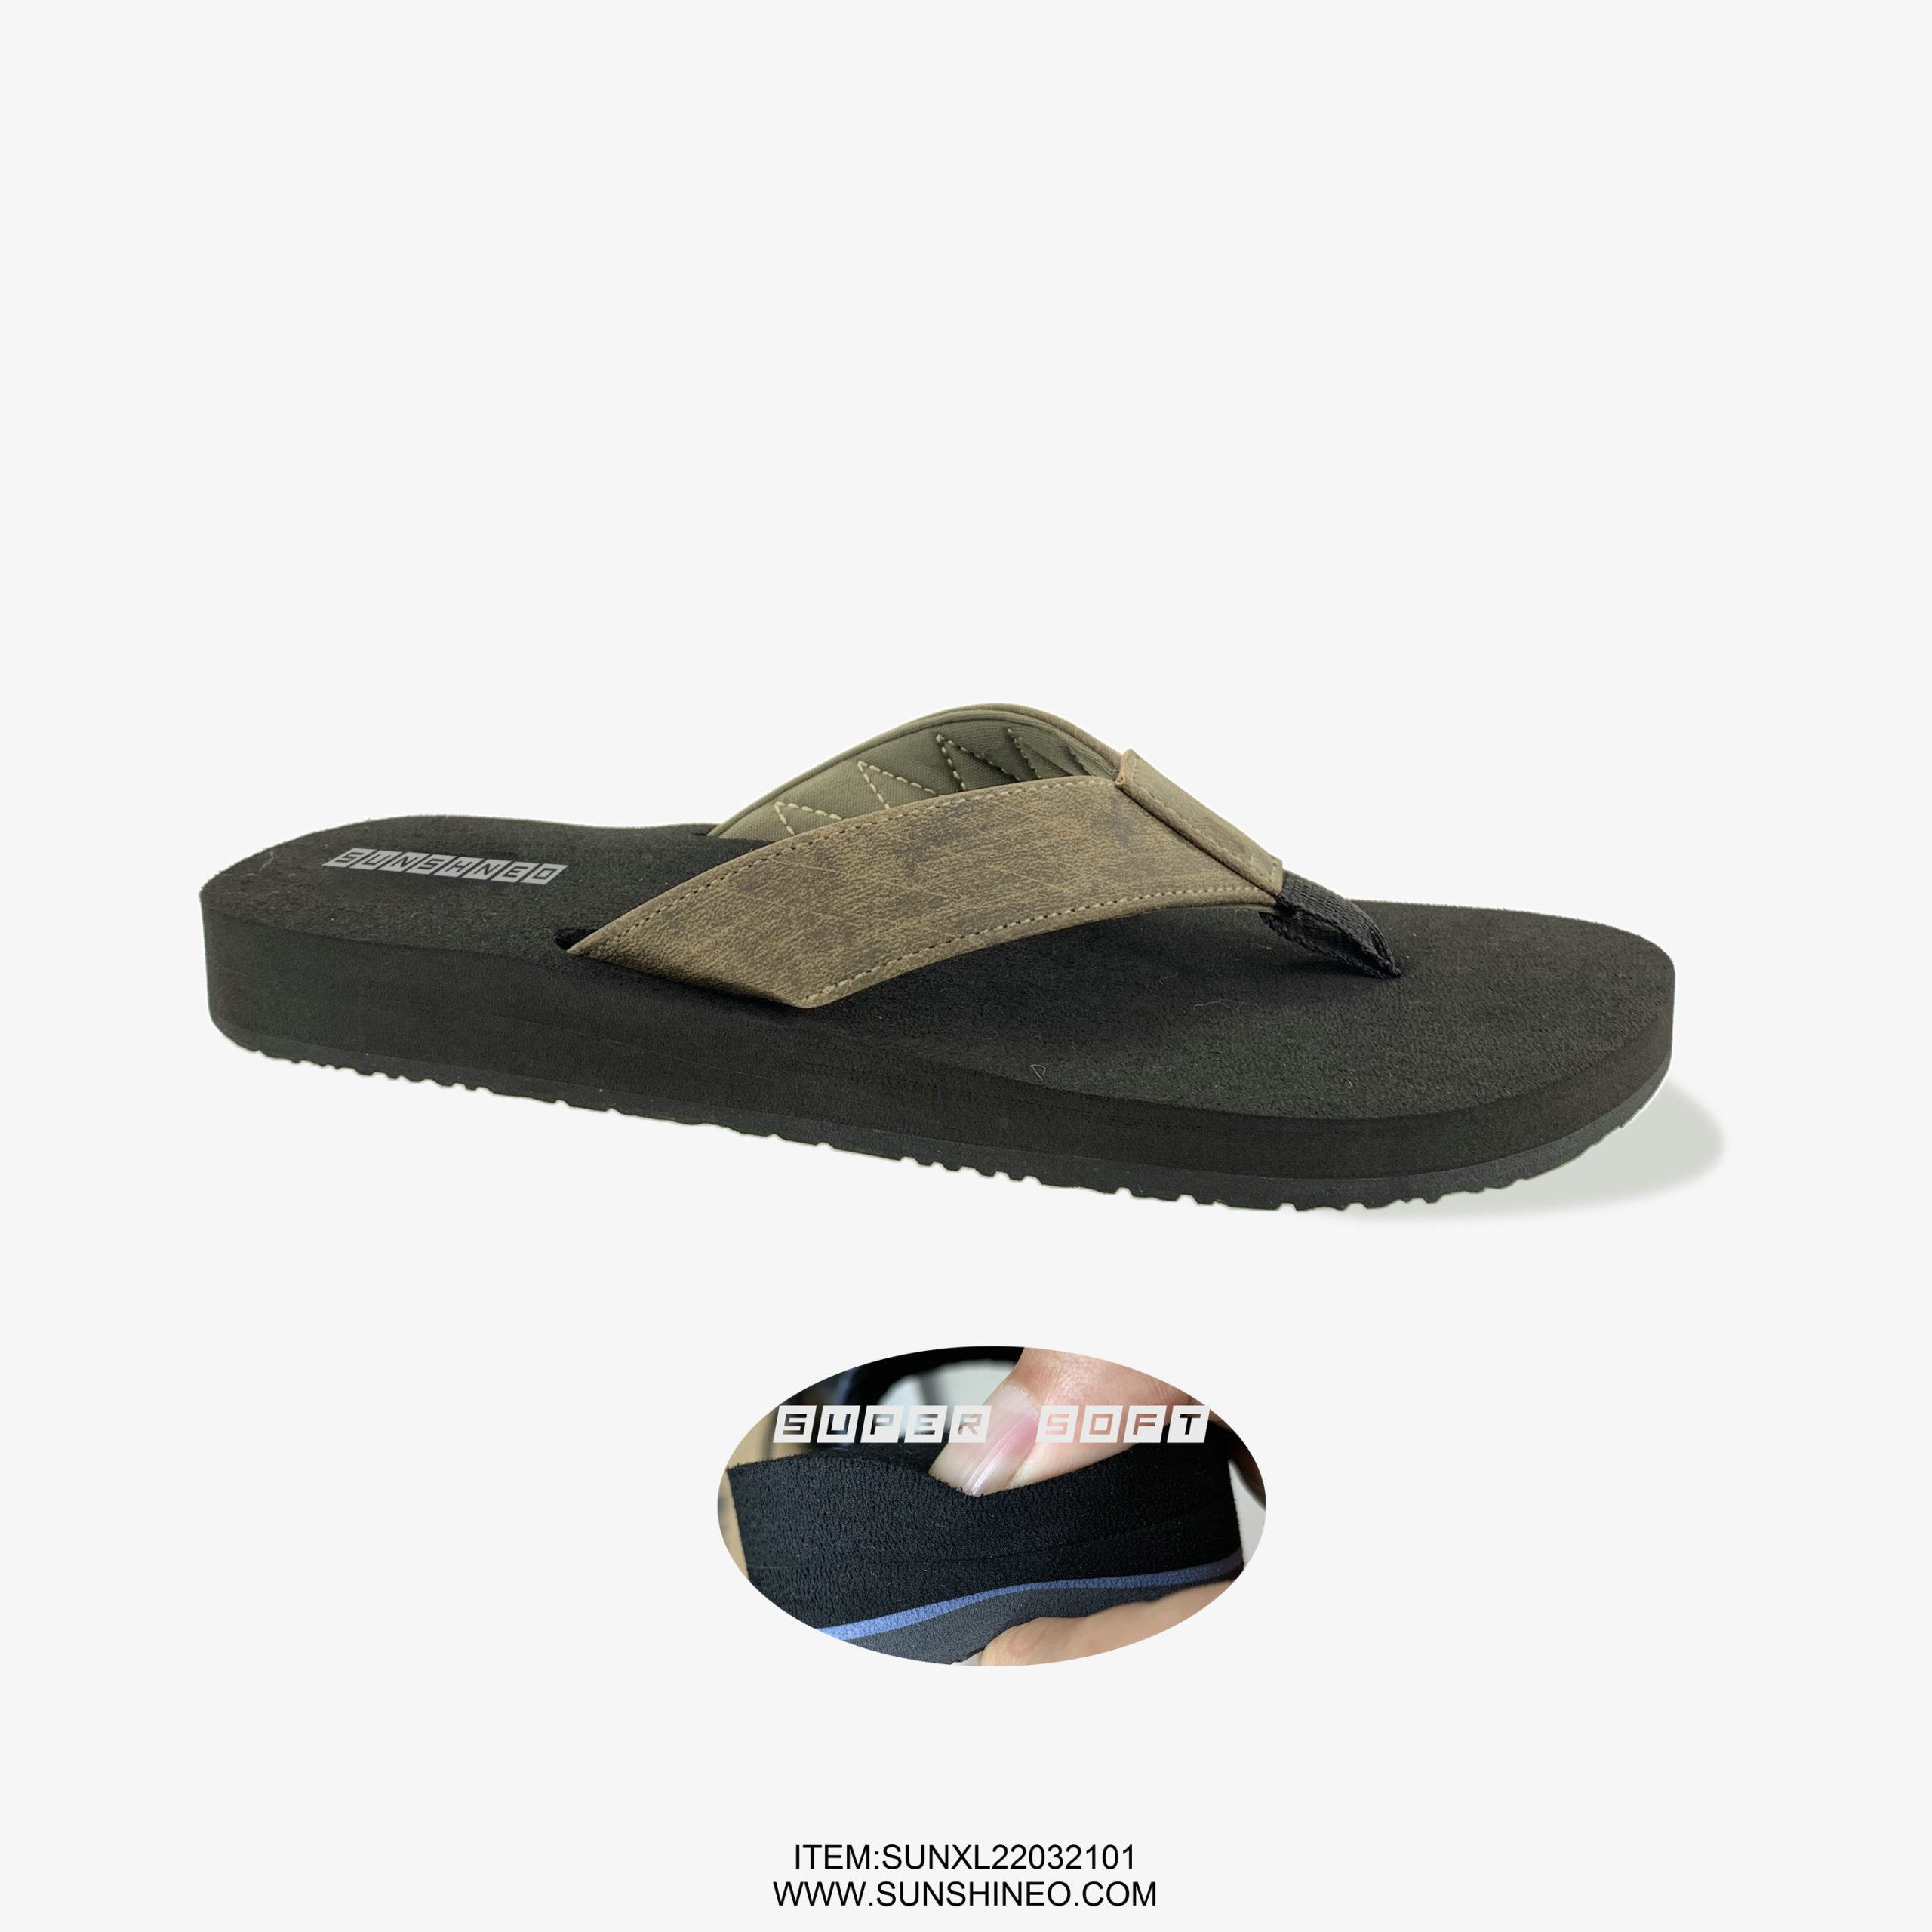 SUNXL22032101 flip flop sandals